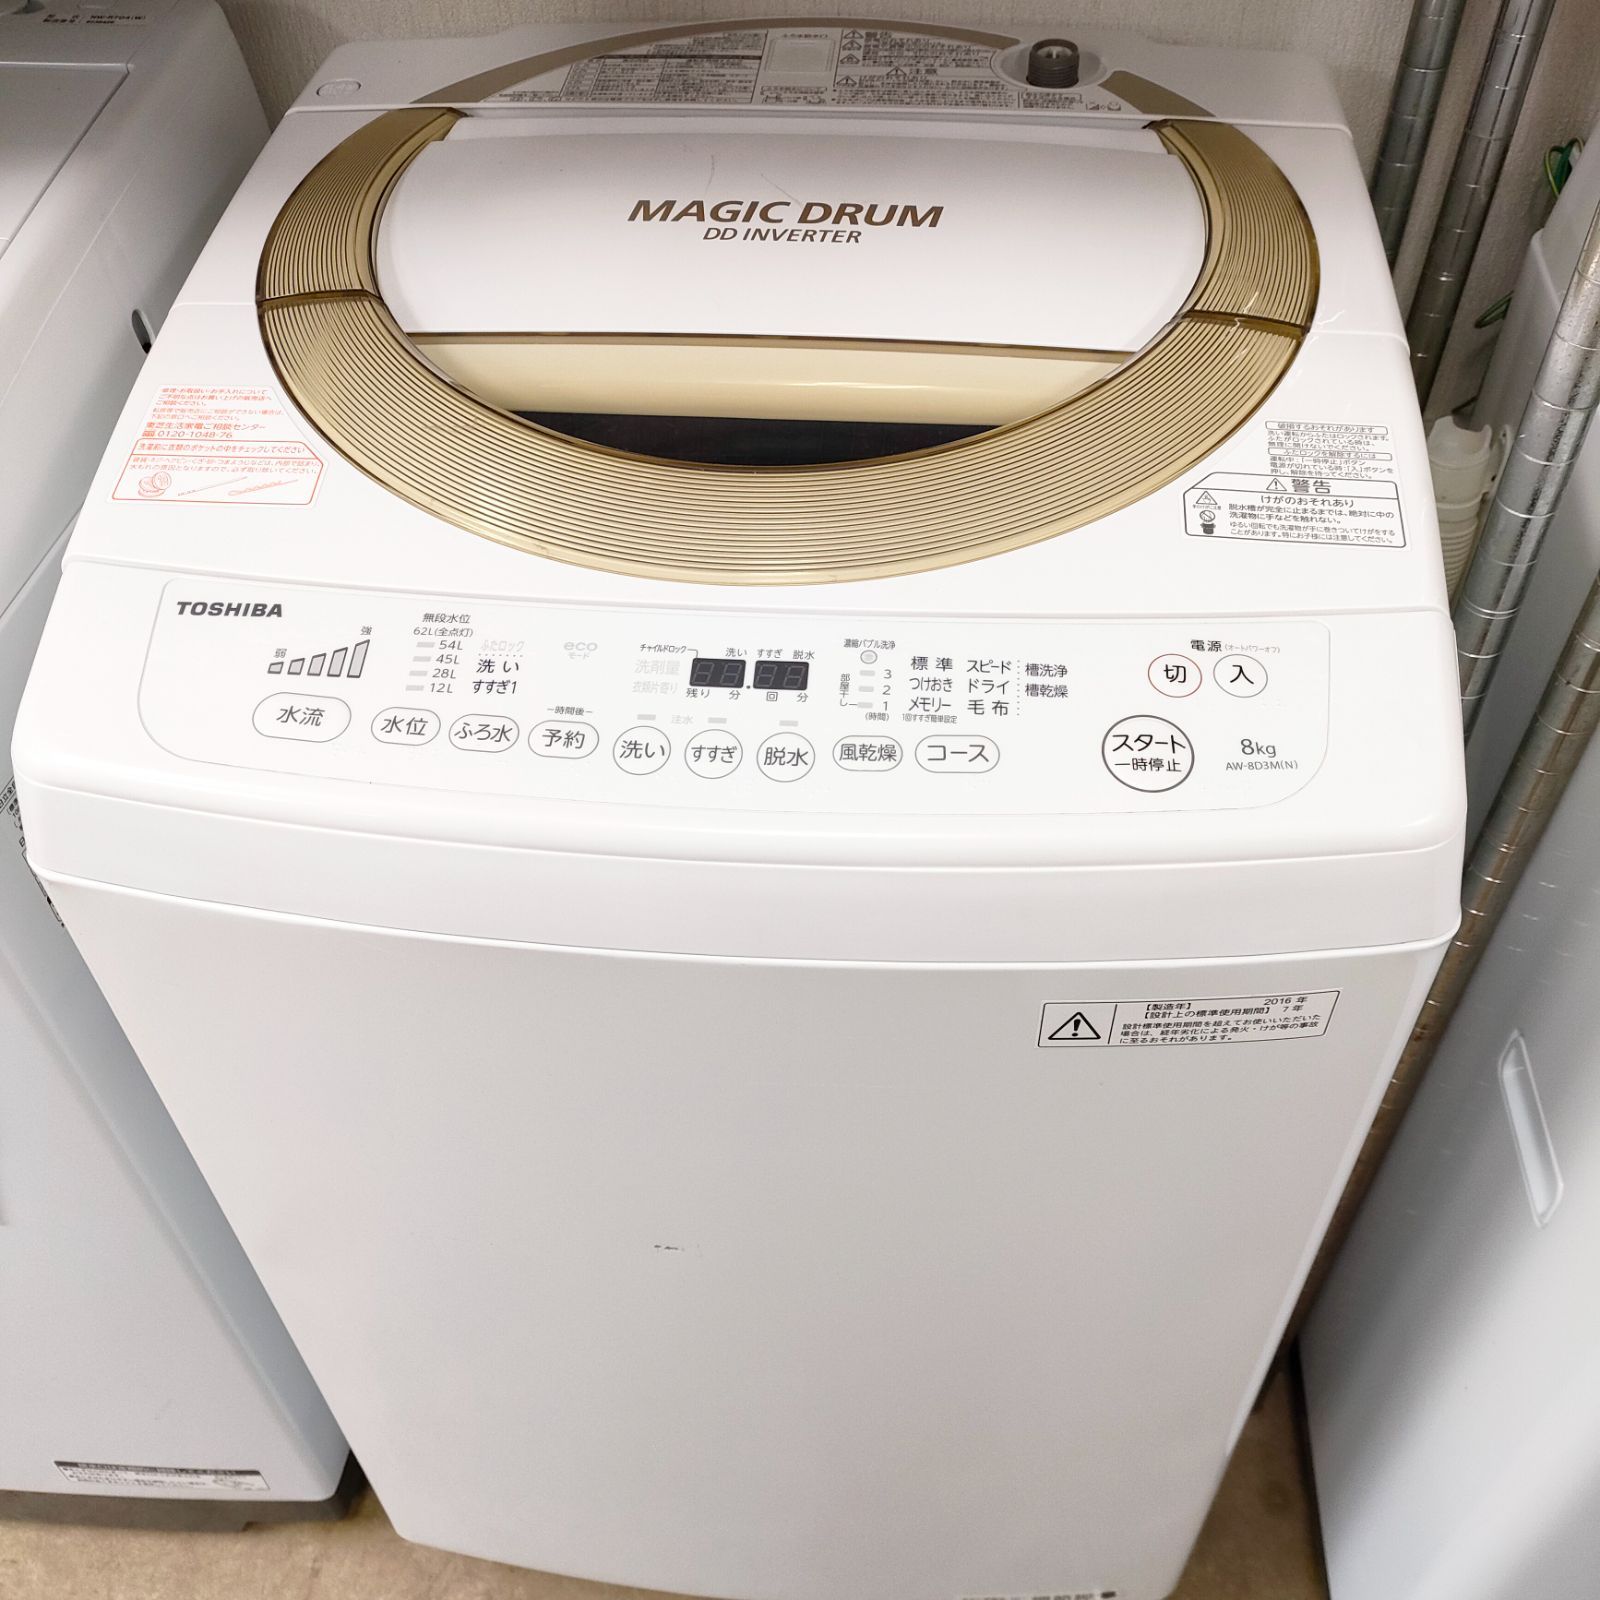 ◇ TOSHIBA 洗濯機 8kg 2016年製 AW-8D3M | www.agb.md